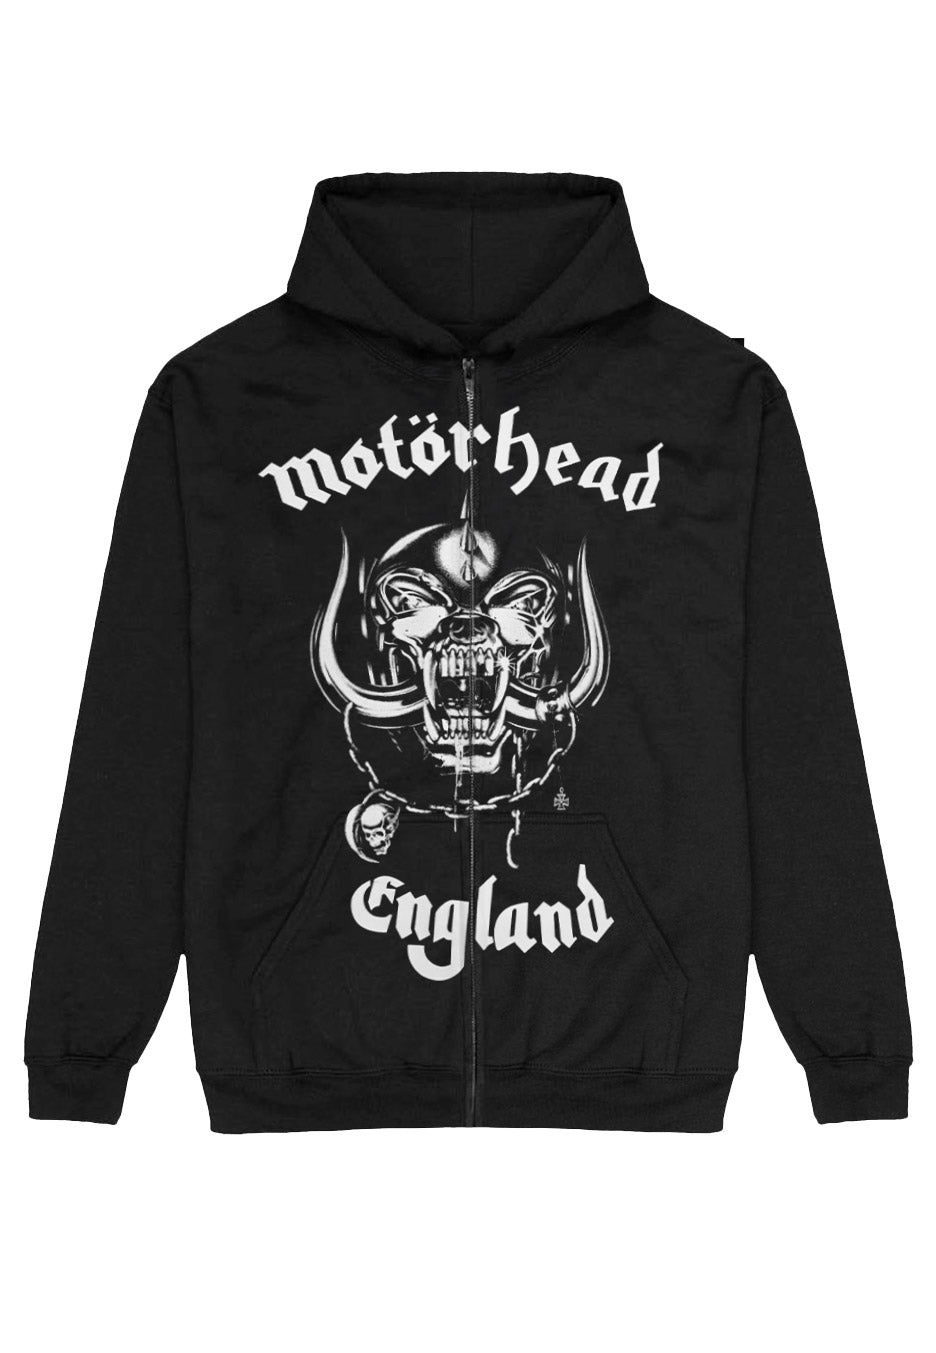 Motörhead - England With BP - Zipper